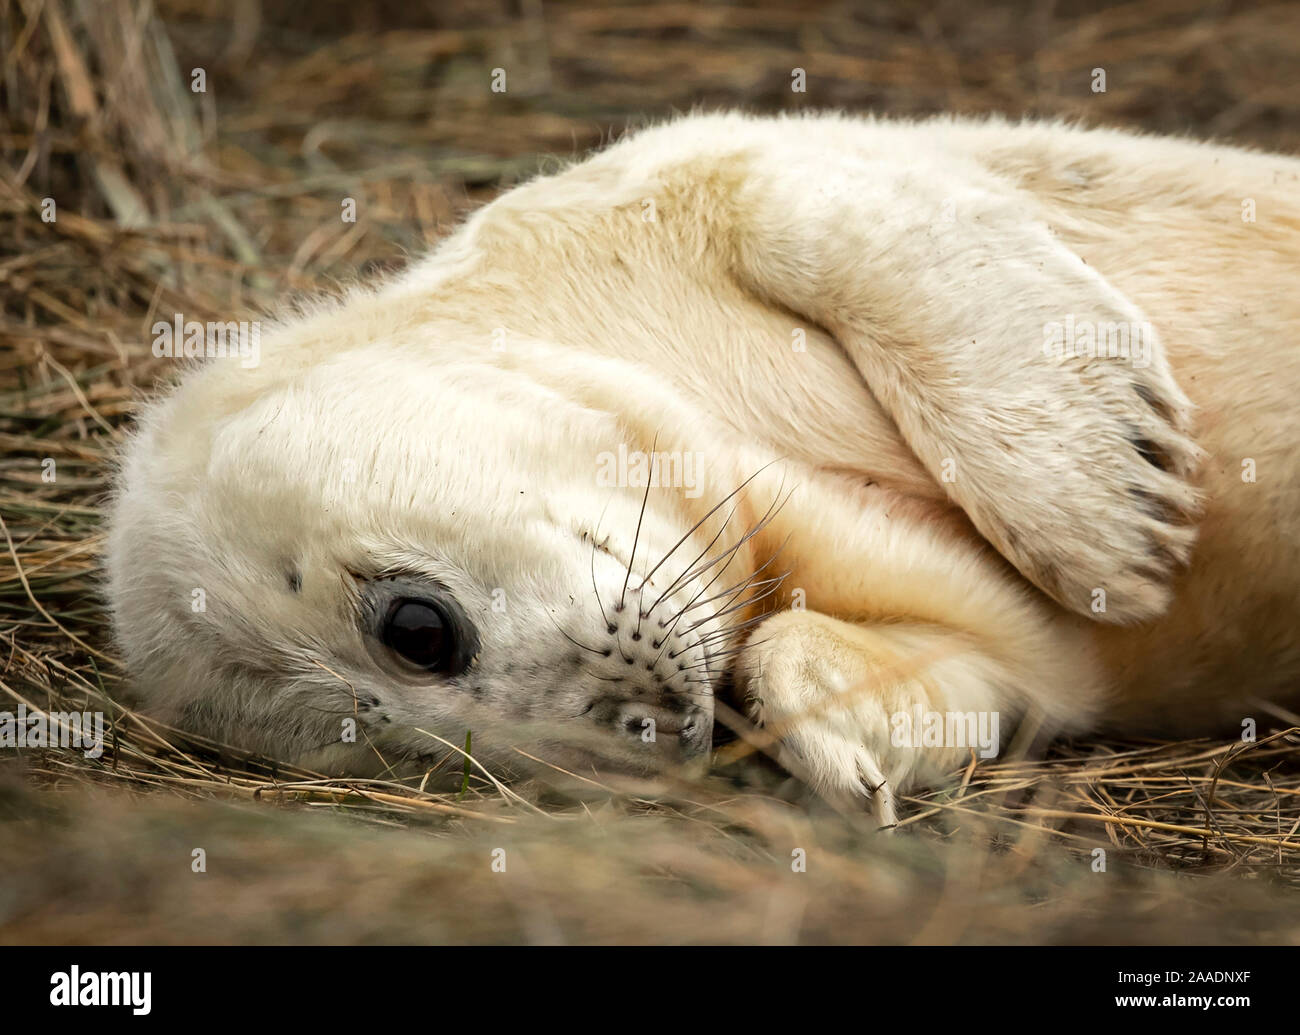 Un cucciolo di foca pup, come le foche grigie ritorno alla Donna Nook Riserva Naturale Nazionale in Lincolnshire, dove essi giungono ogni anno alla fine di ottobre, novembre e dicembre per dare nascita. Foto Stock